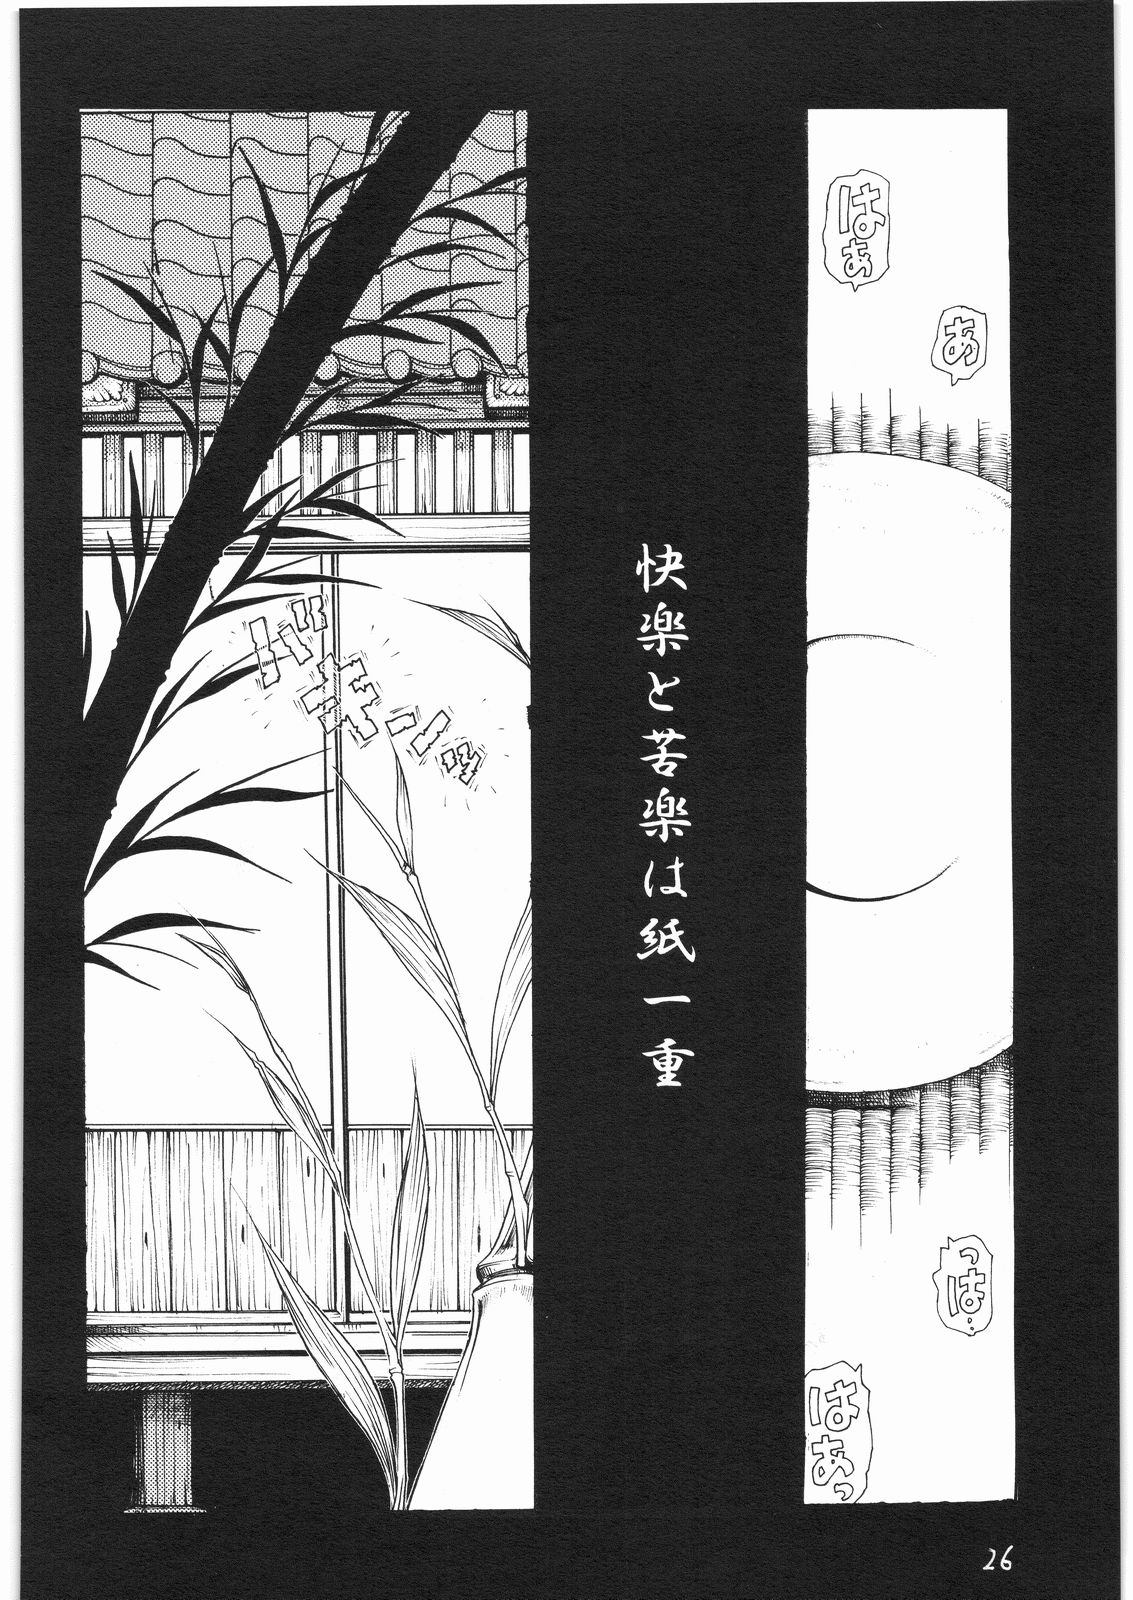 [Sumire Club] gatsu no hikari ni teru kami gesshoku wari rei matsuri hoi han page 25 full